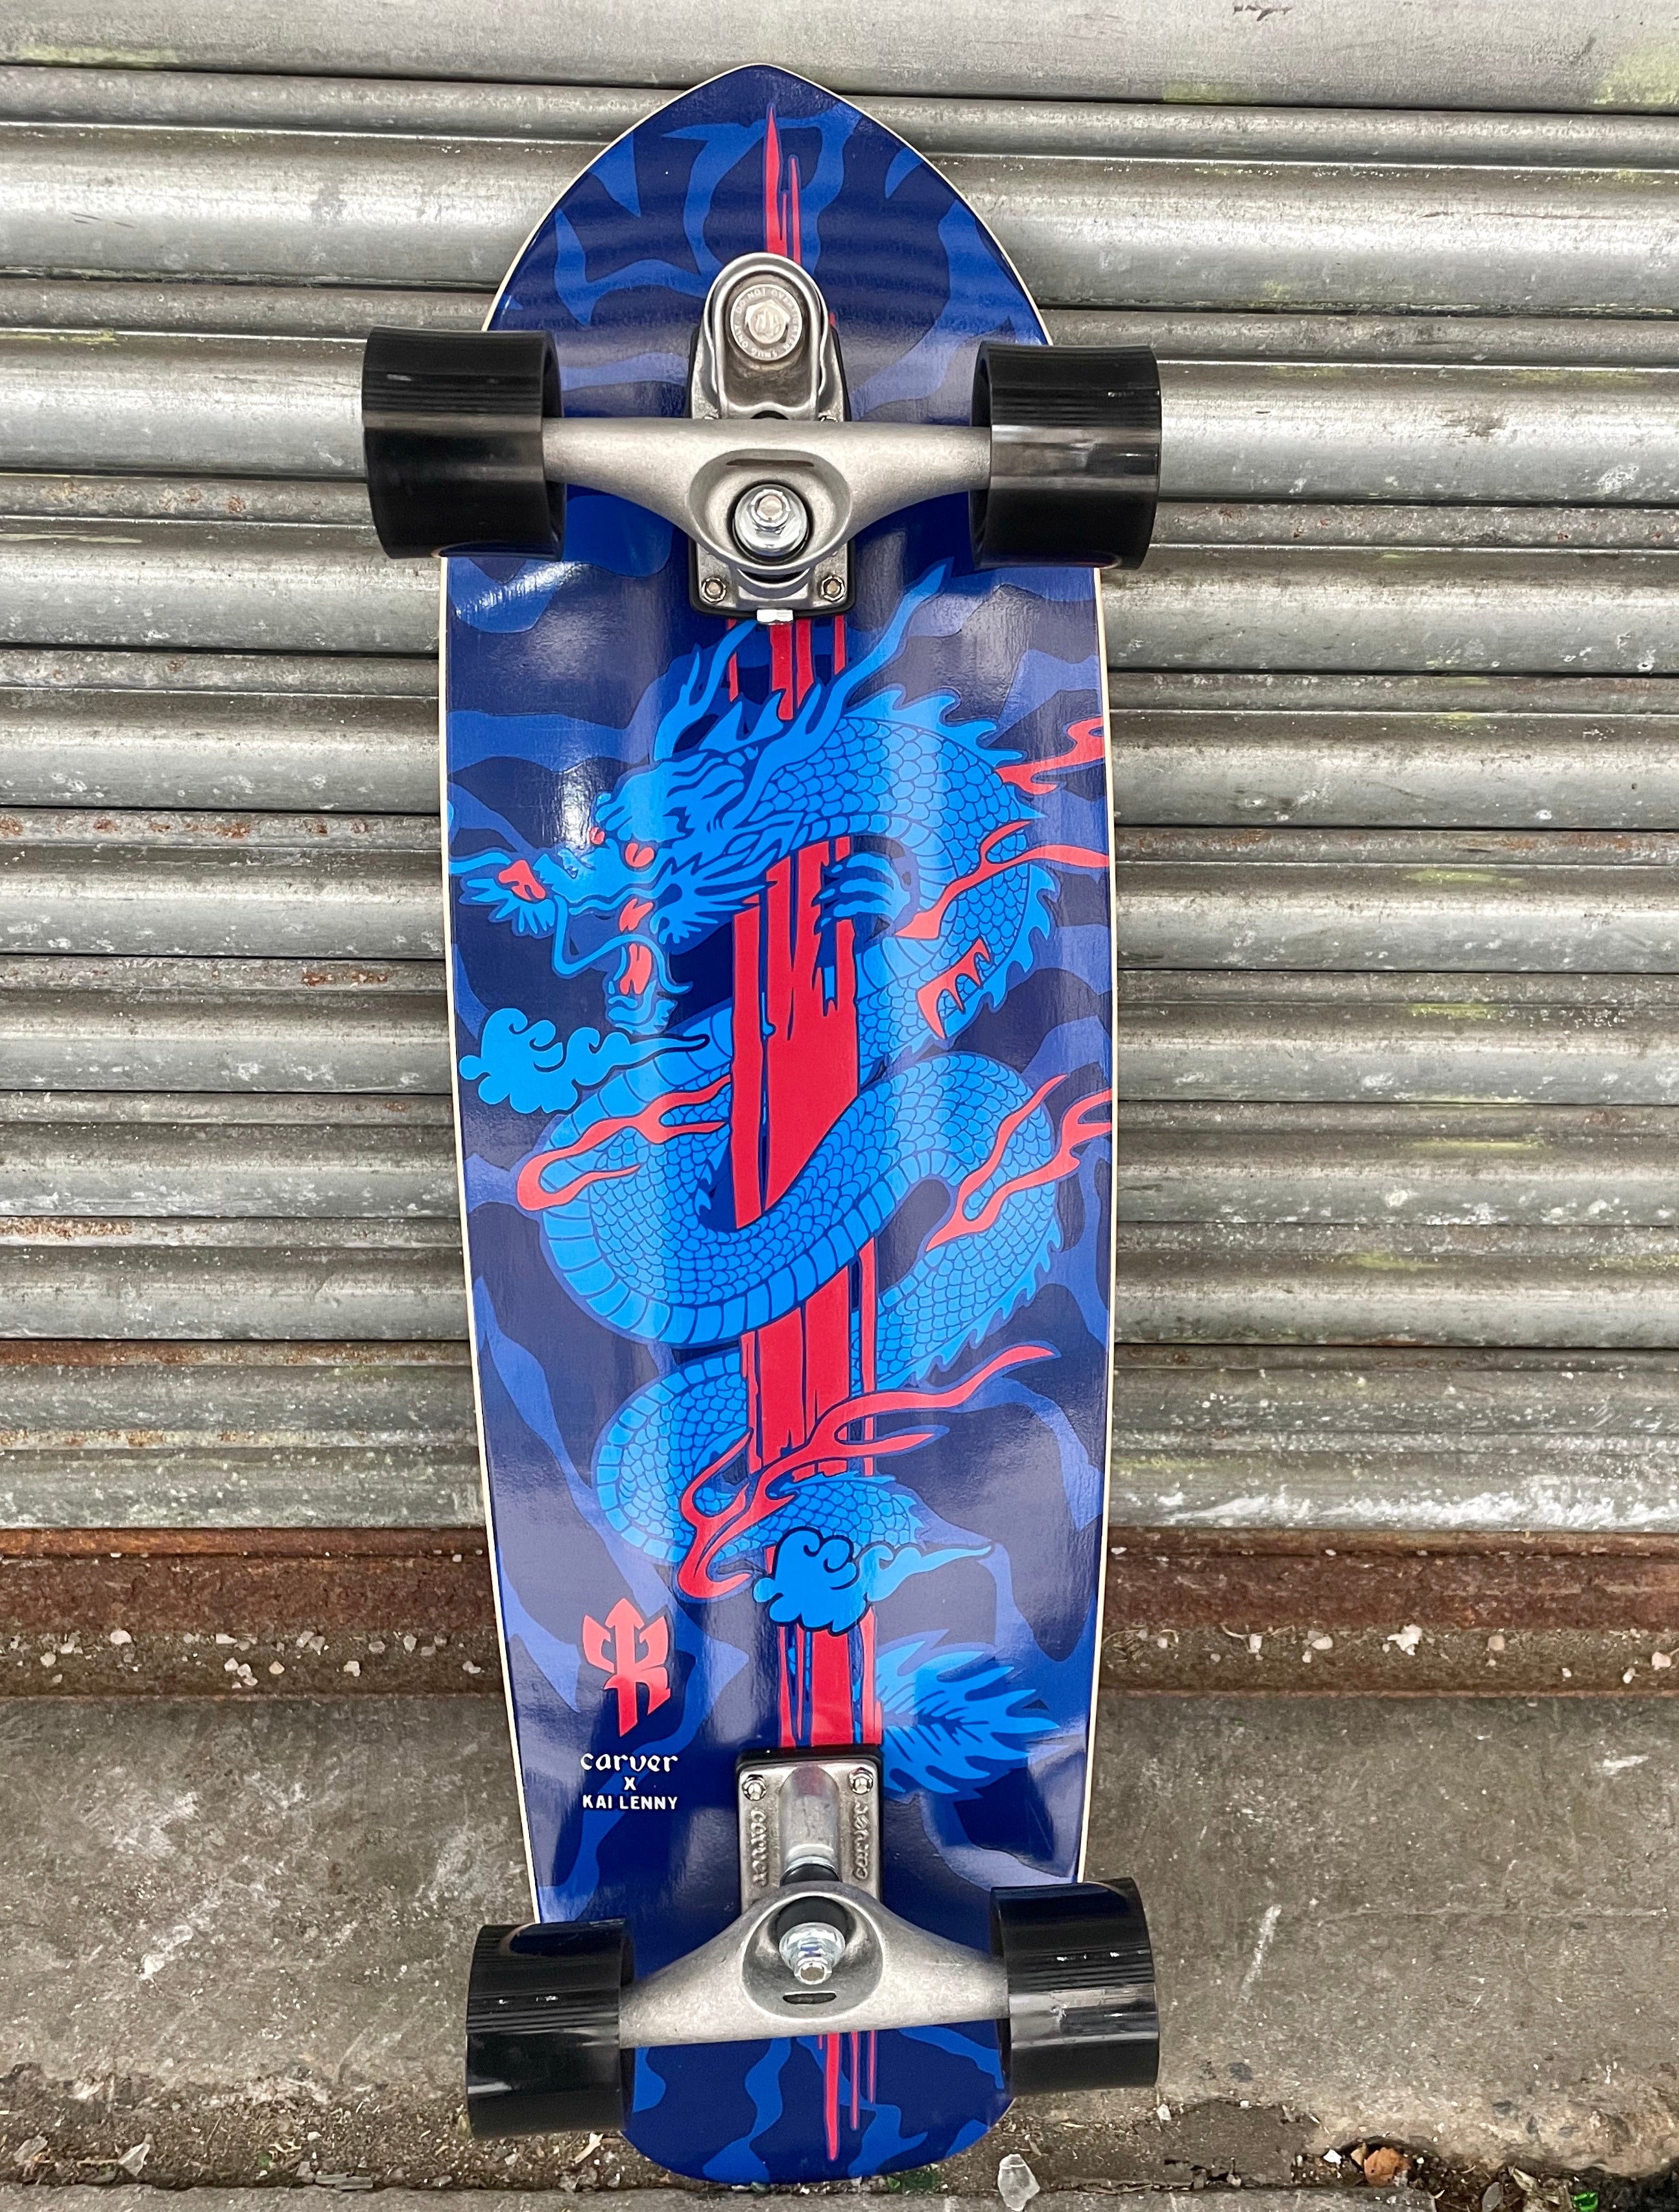 Carver Skateboard Completes